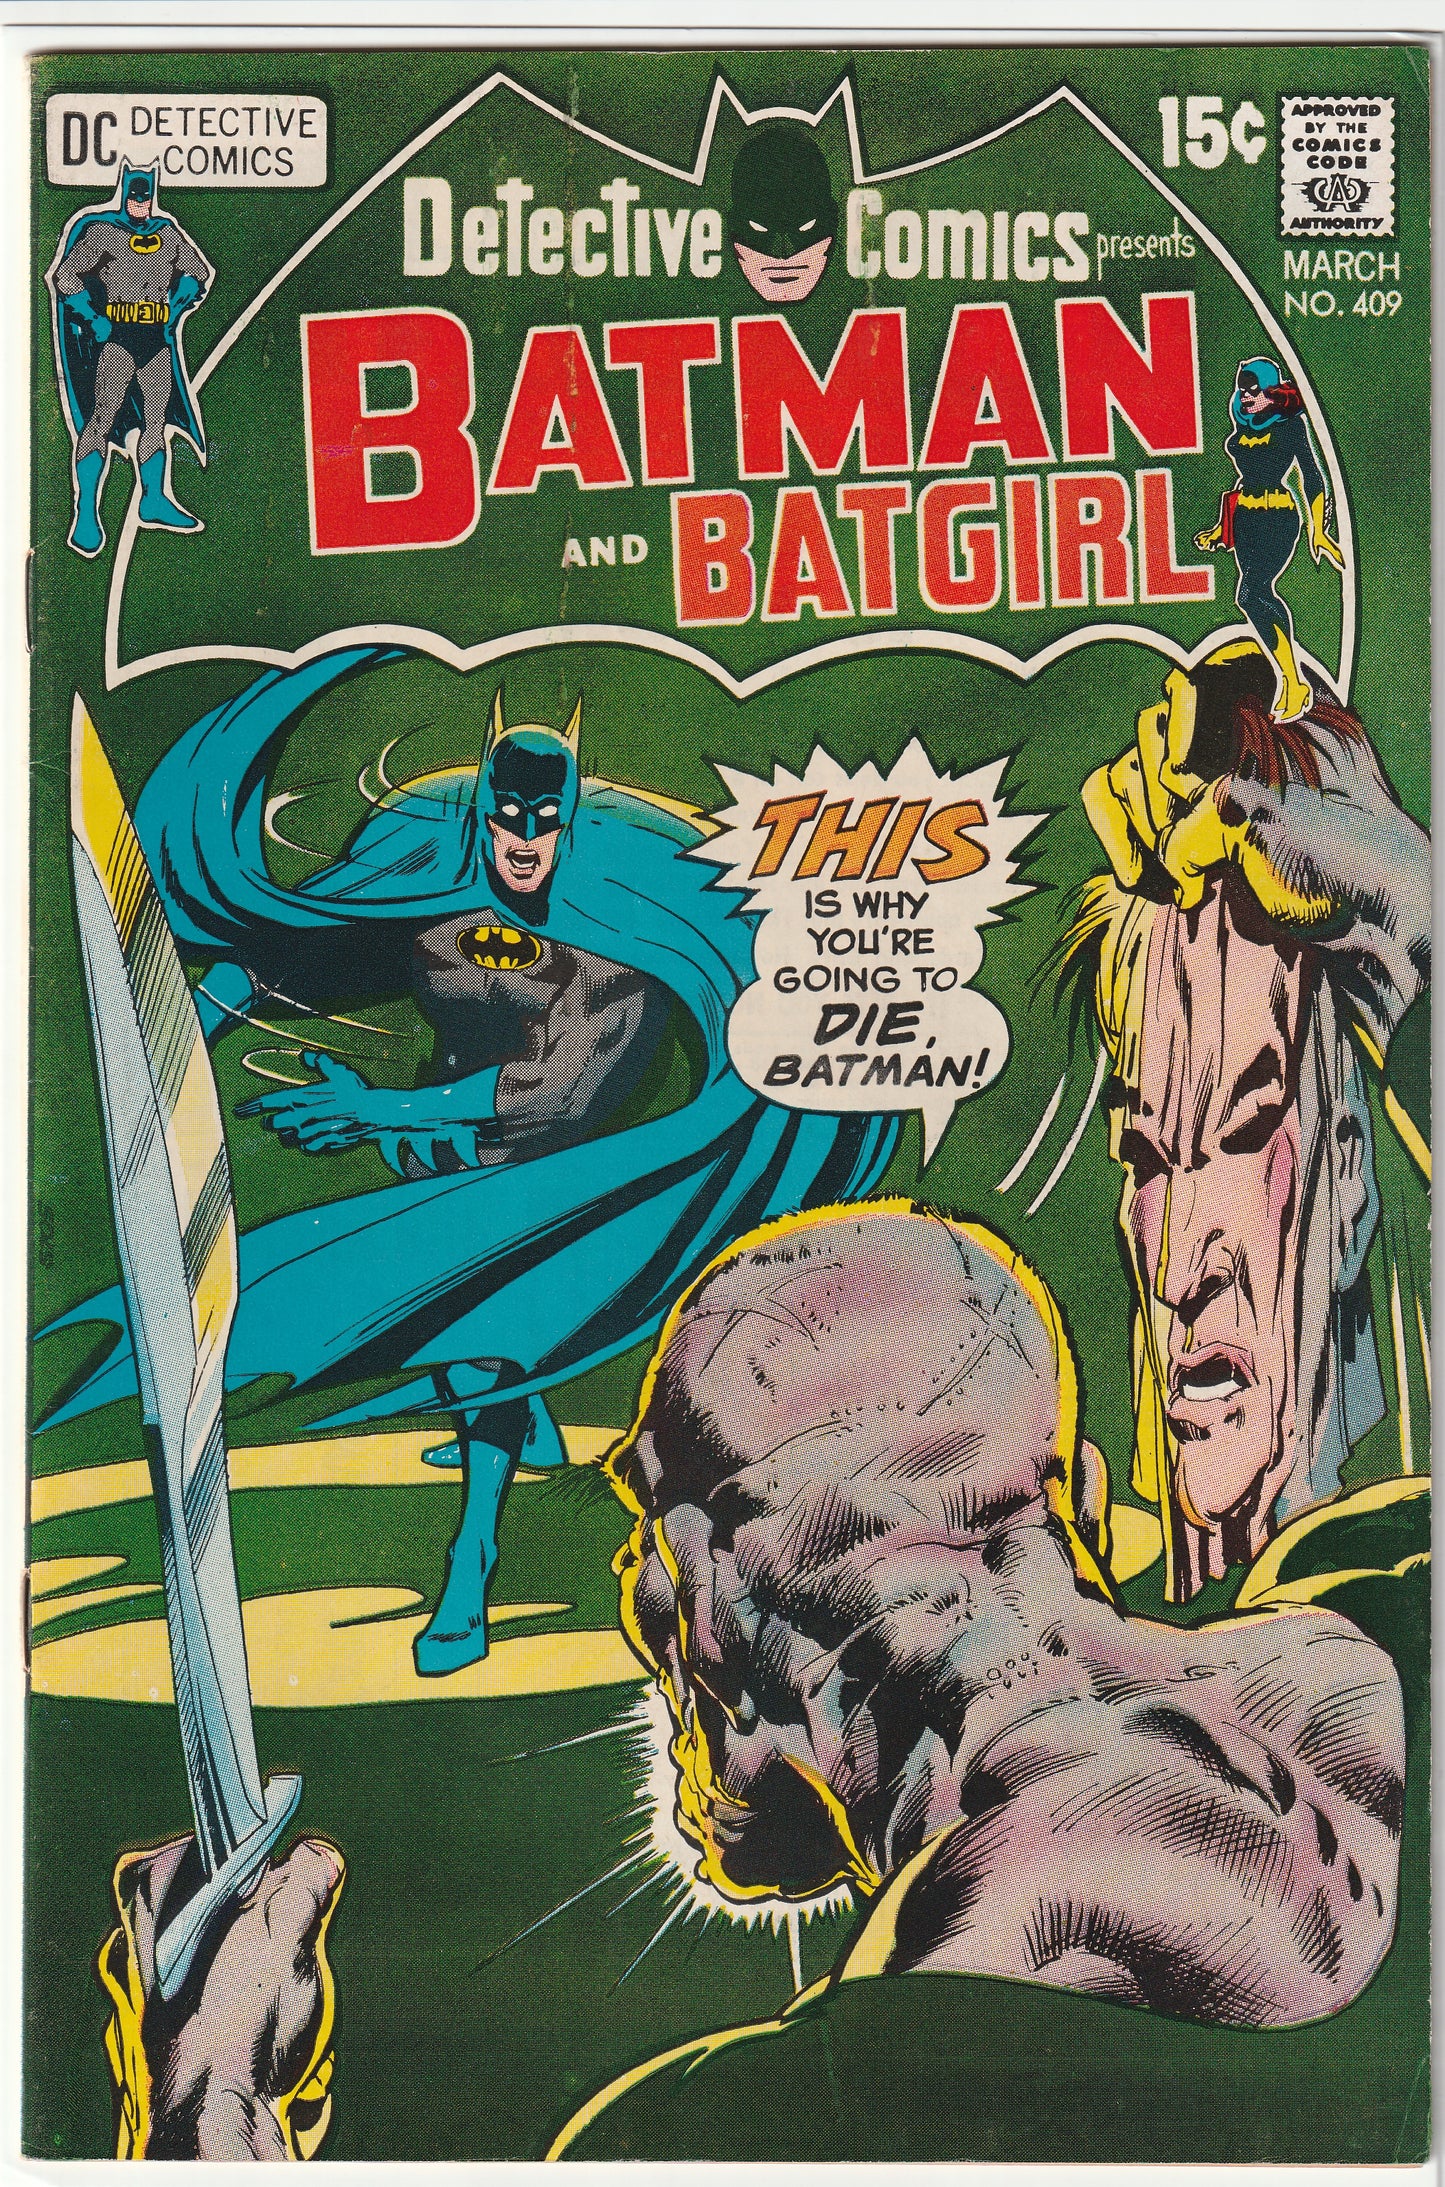 Detective Comics #409 Presents Batman and Batgirl (1971)